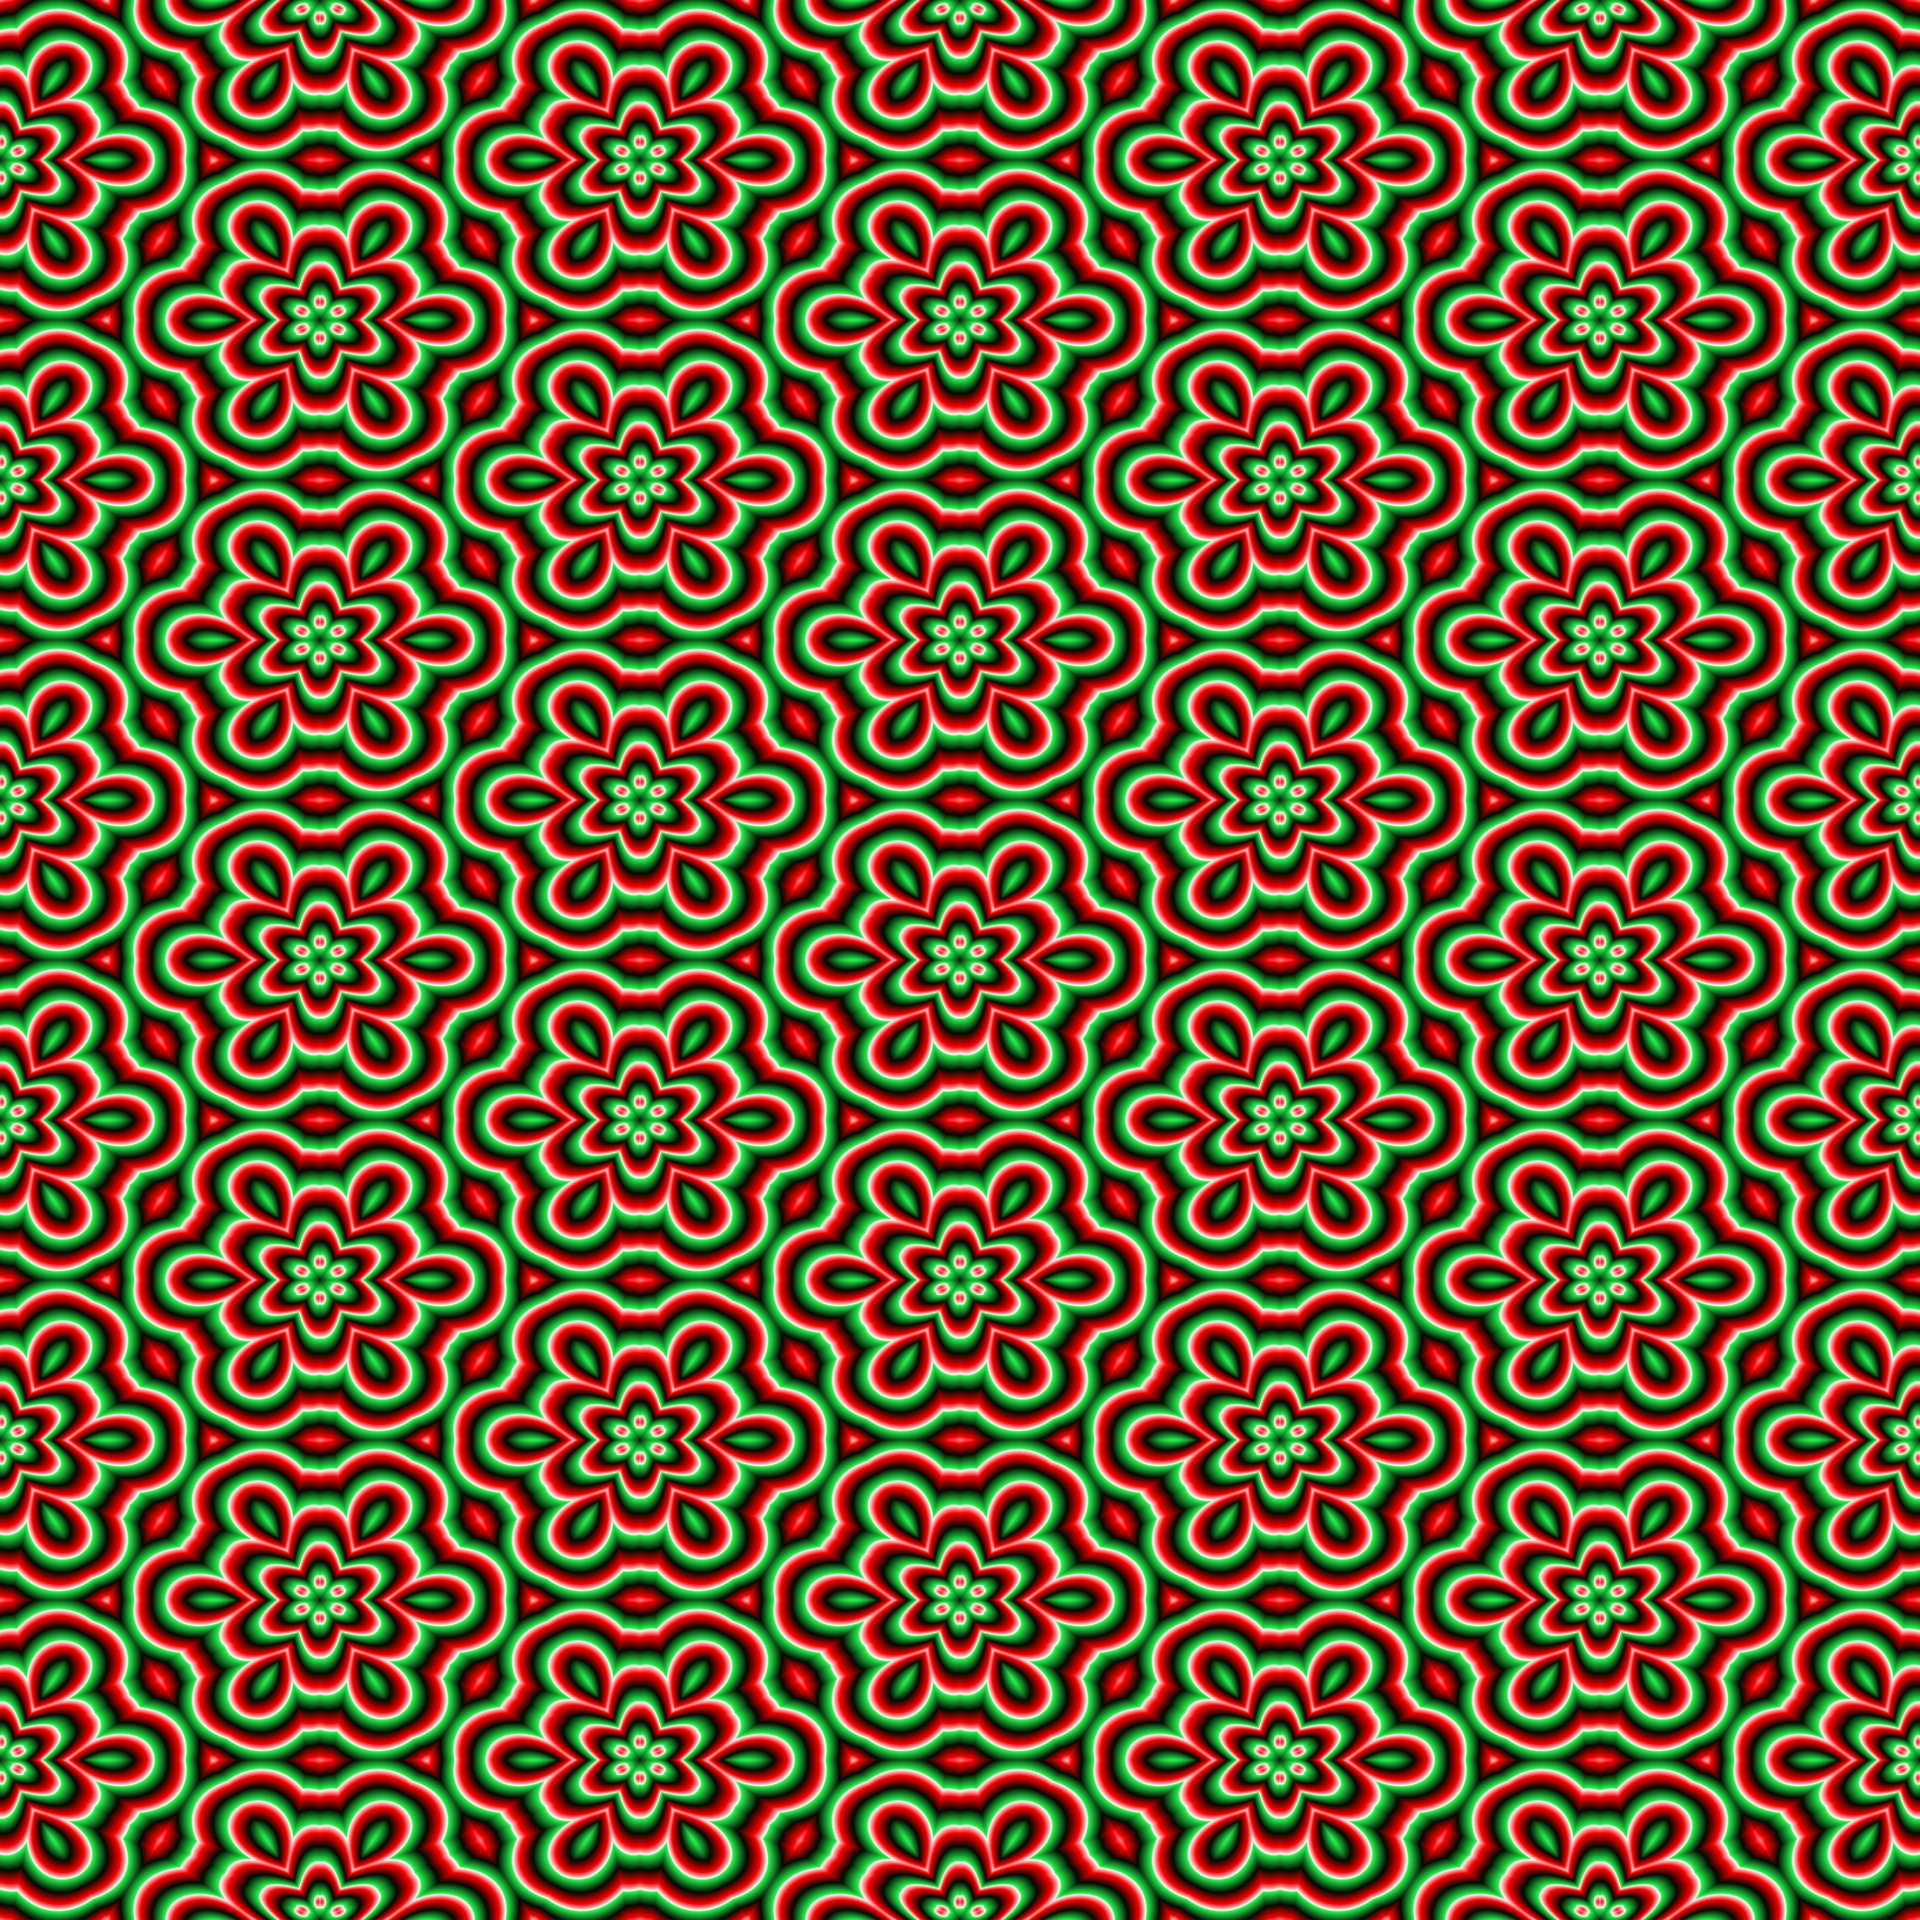 Seamless Pattern Background Art